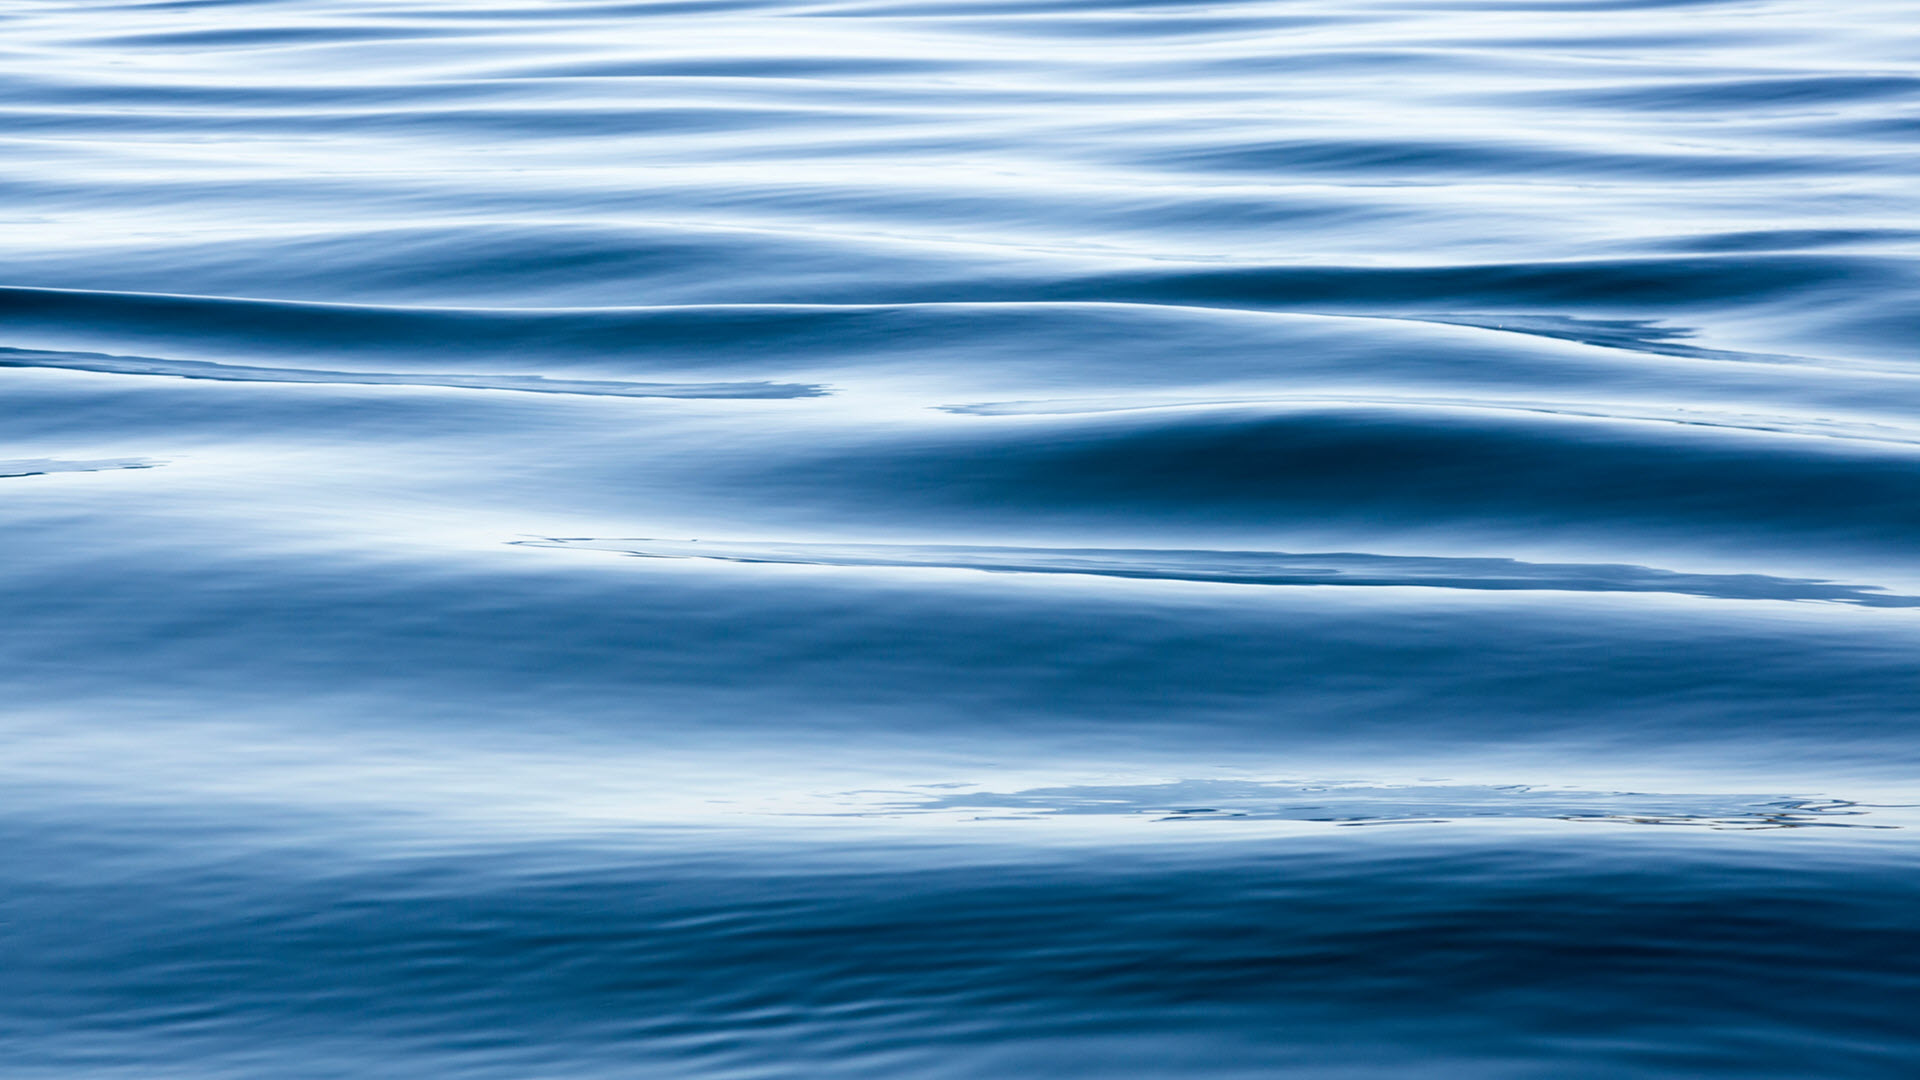 Xem hình nền Hình nước biển xanh tuyệt đẹp 64267 hinhnensieuhotvn